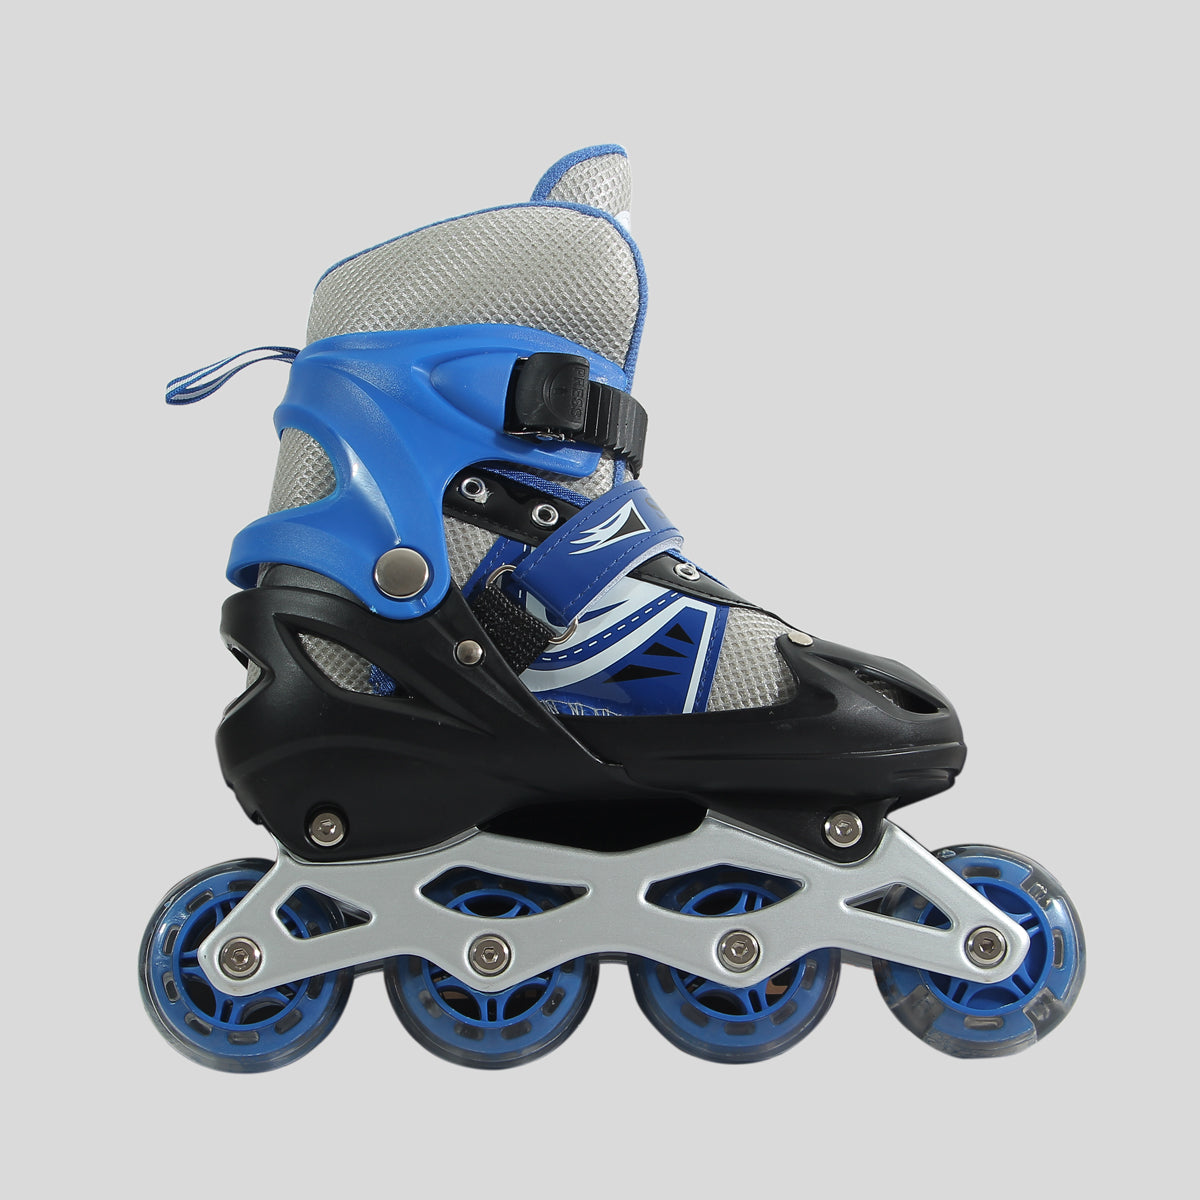 patines de 4 ruedas